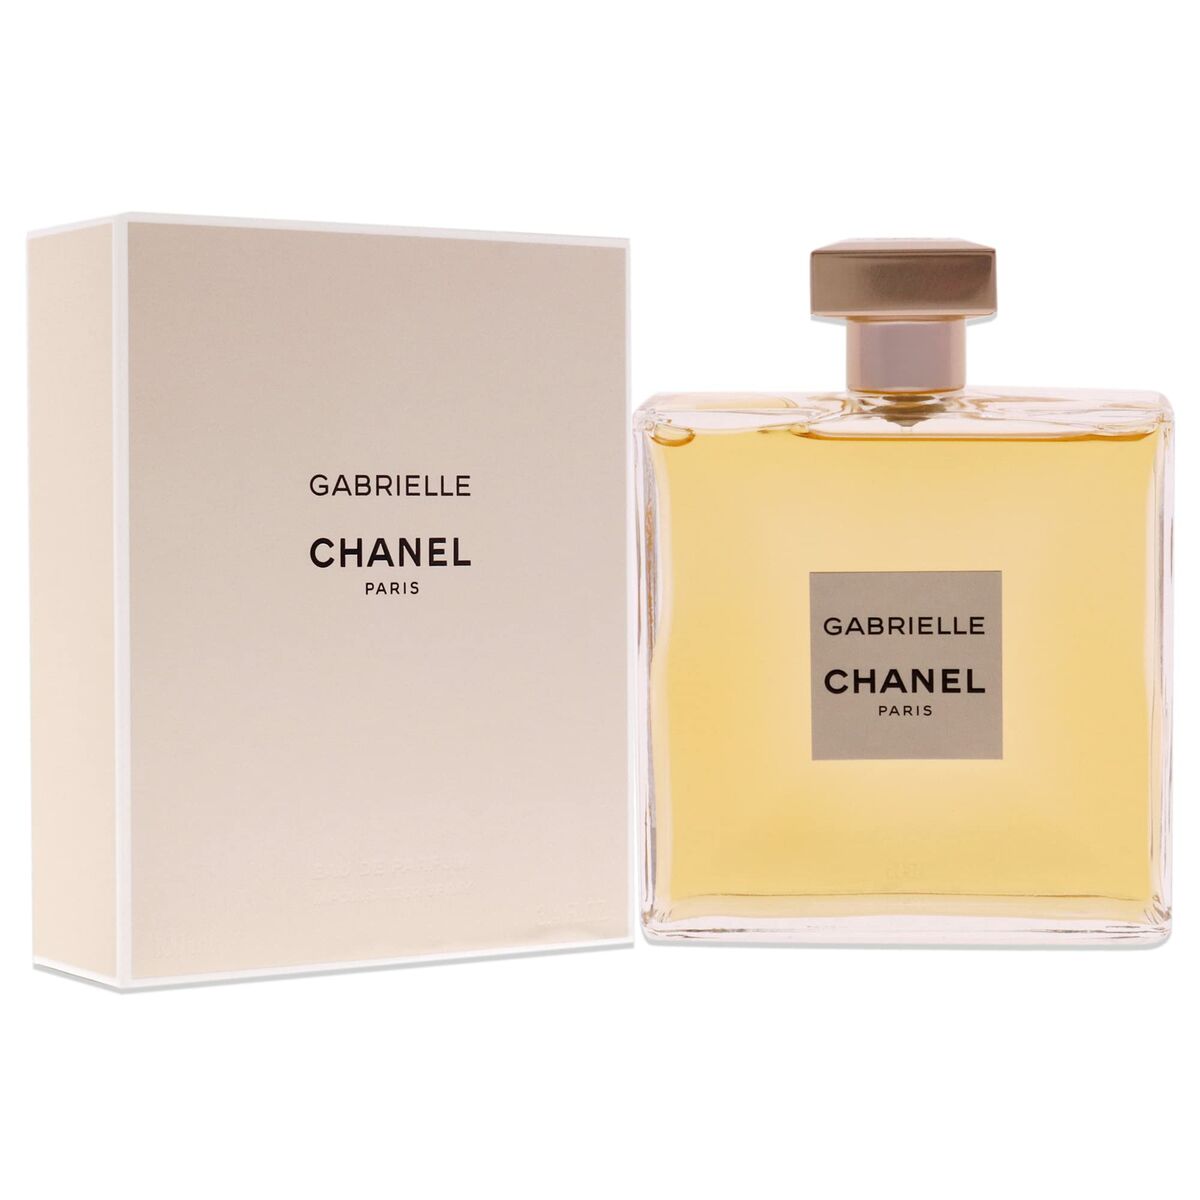 CHANEL Gabrielle Chanel Eau De Parfum